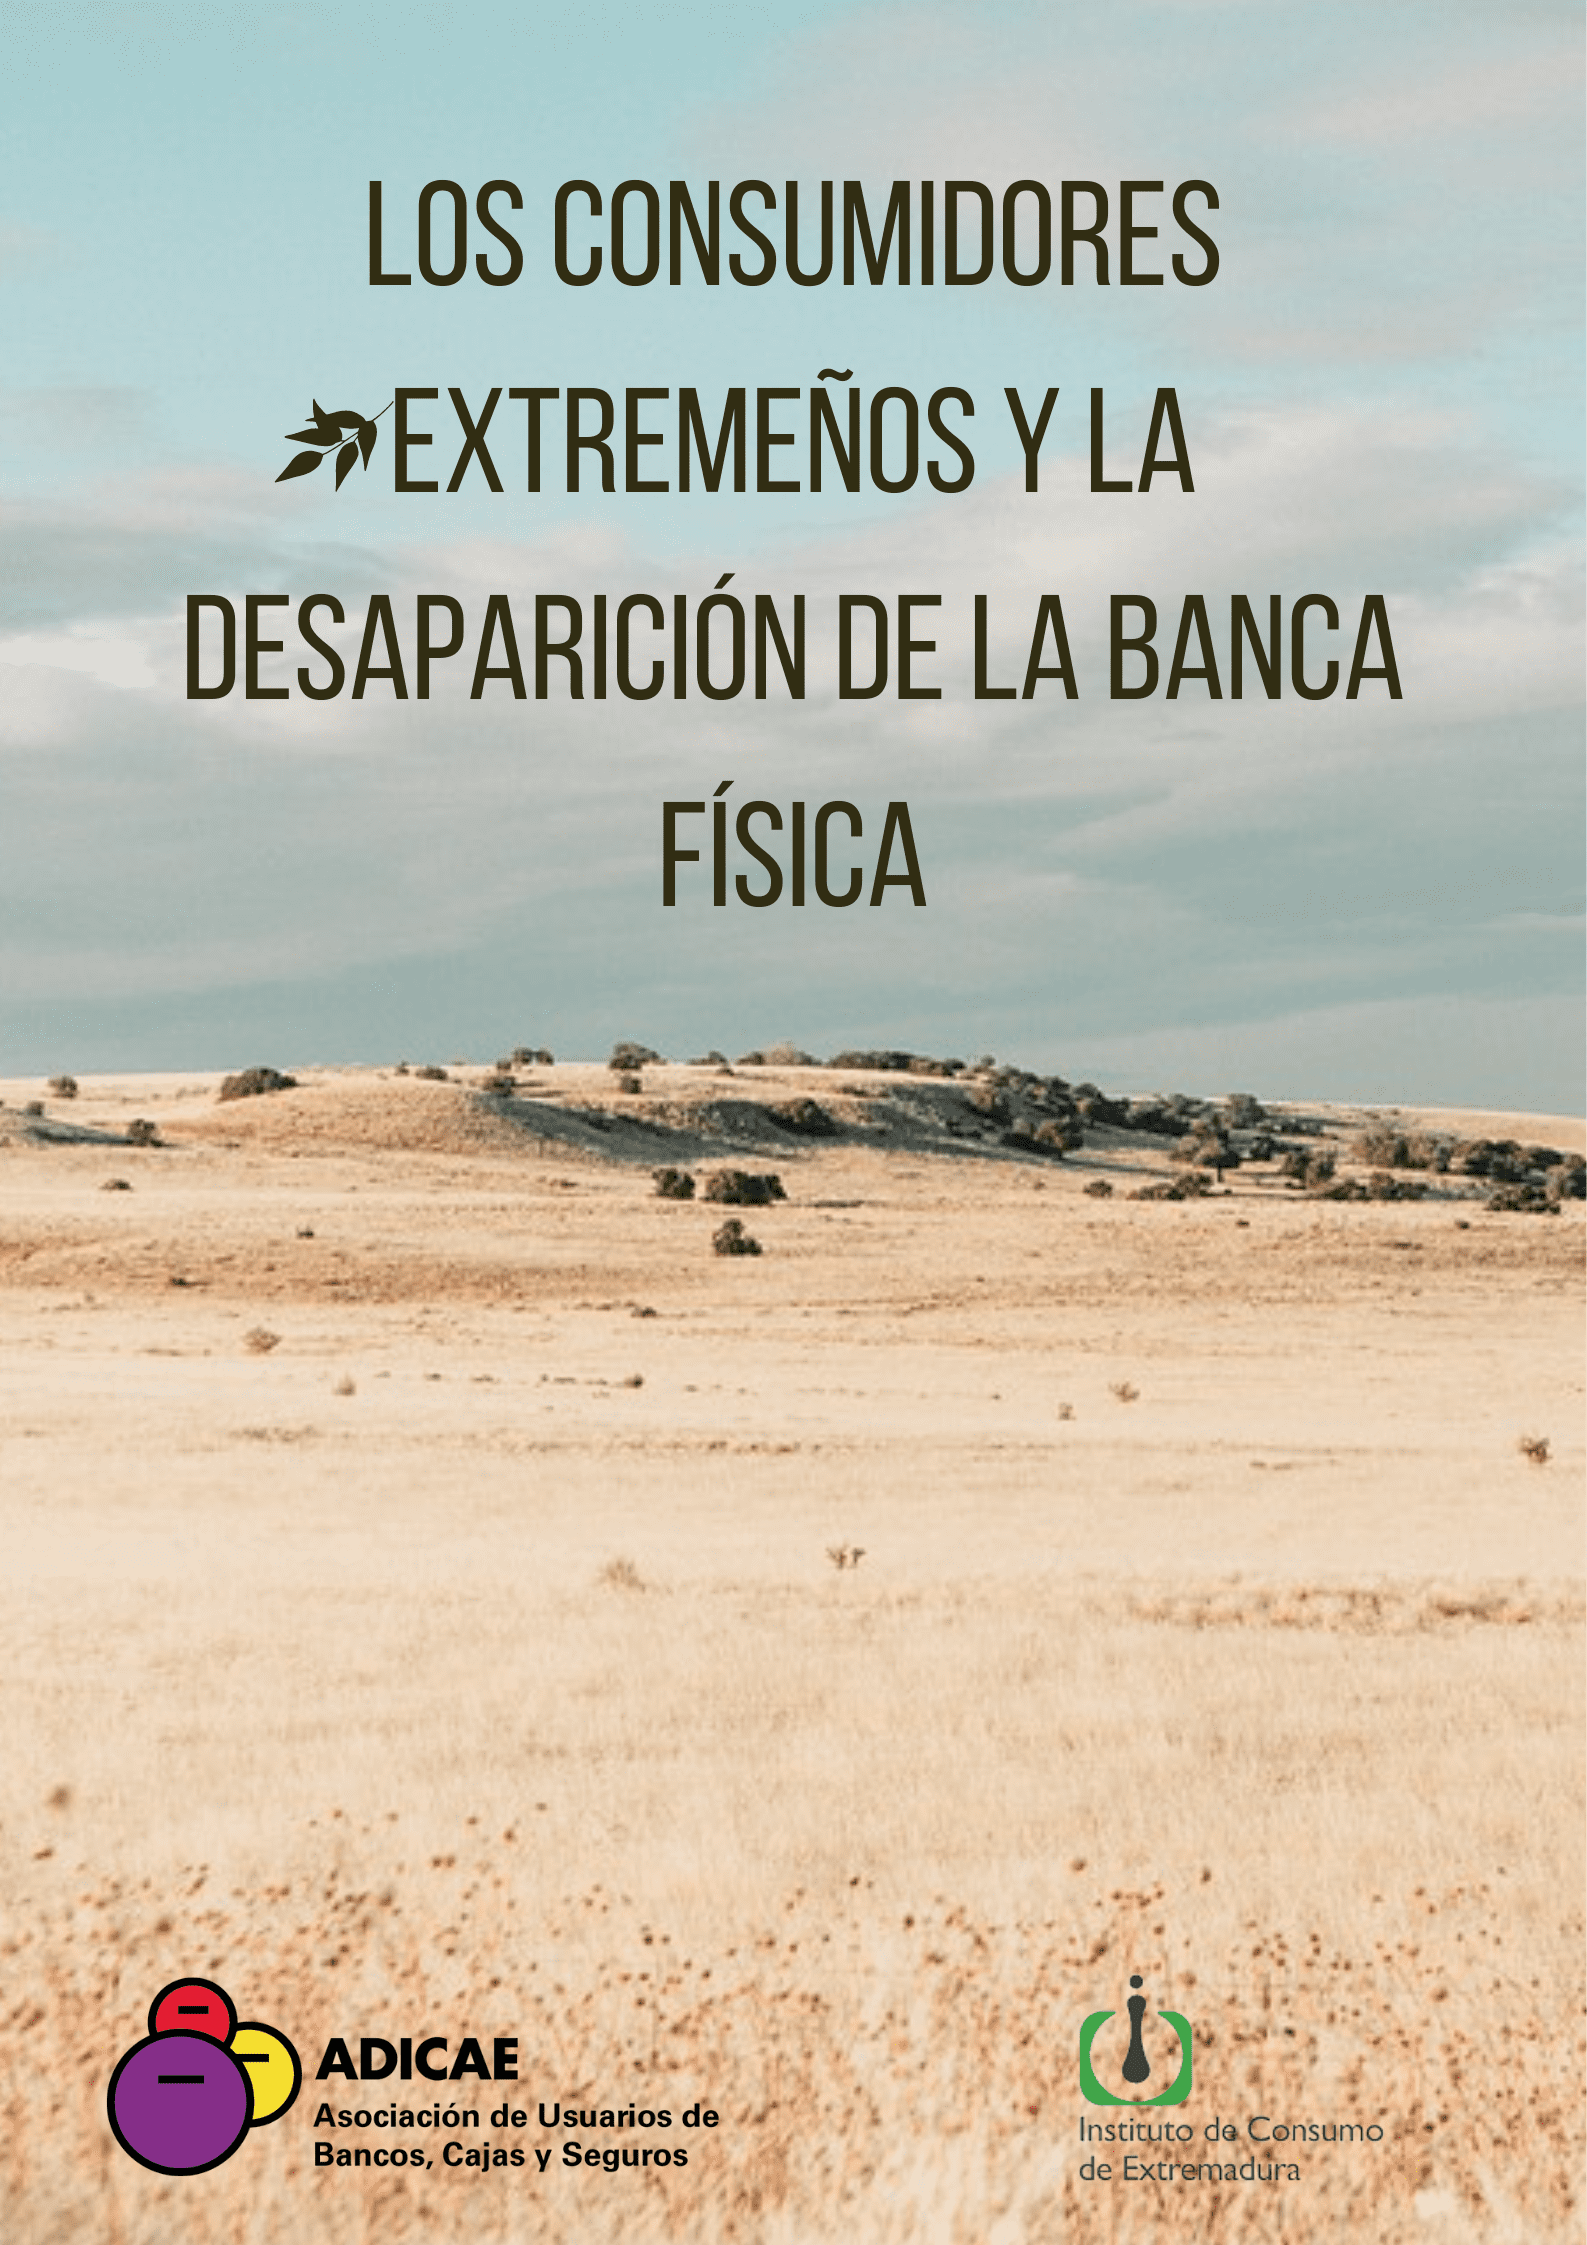 Desaparición de la banca física en Extremadura